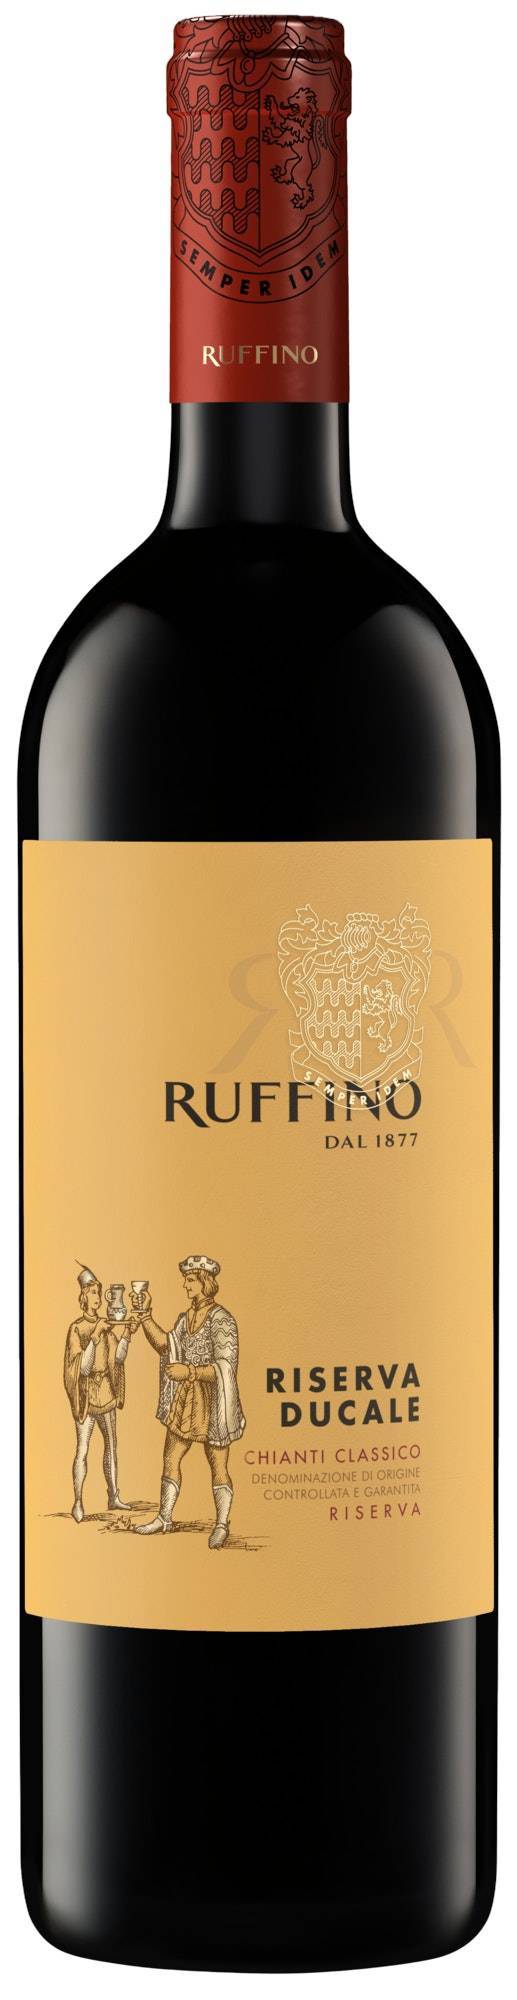 Ruffino Riserva Ducale Chianti Classico Docg Italian Red Wine (750 ml)